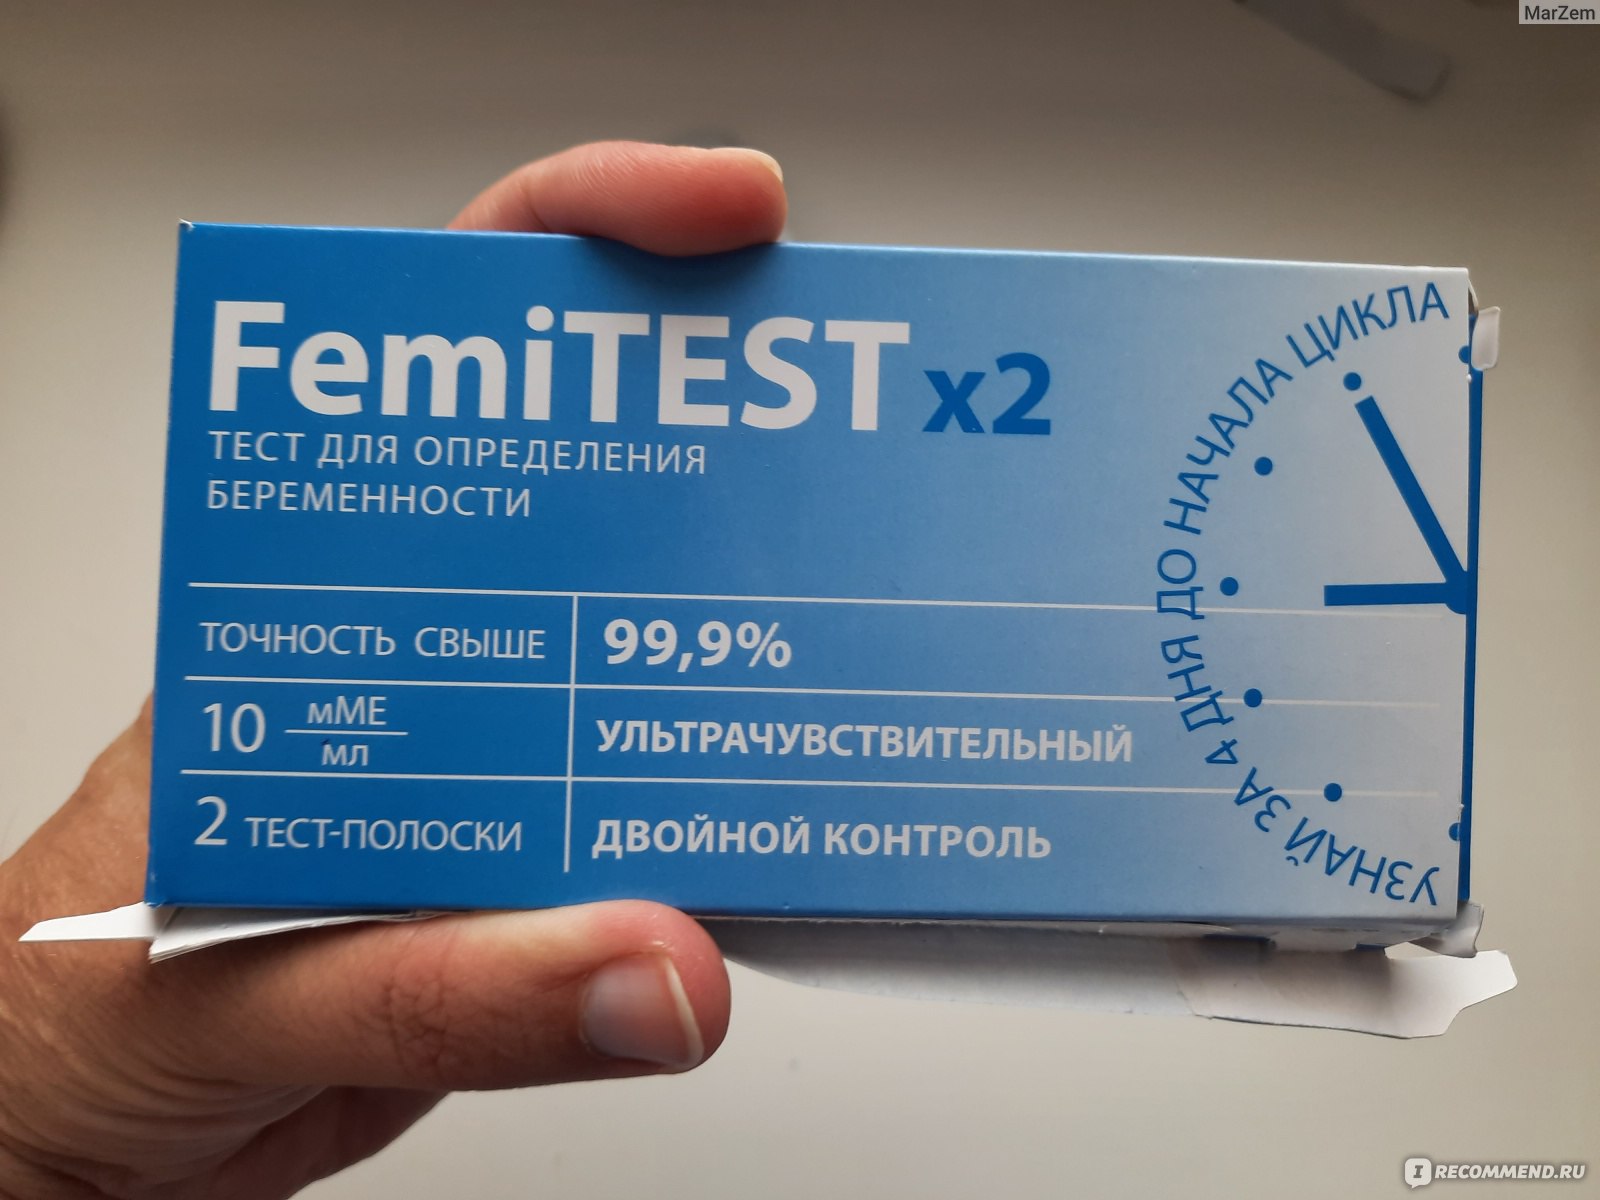 Феми тесты отзывы. ФЕМИТЕСТ 10 ММЕ/мл. Тест 10 ММЕ/мл ФЕМИТЕСТ. ФЕМИТЕСТ на беременность 10 ММЕ/мл. Femitest тест на беременность 10 ММЕ/мл.